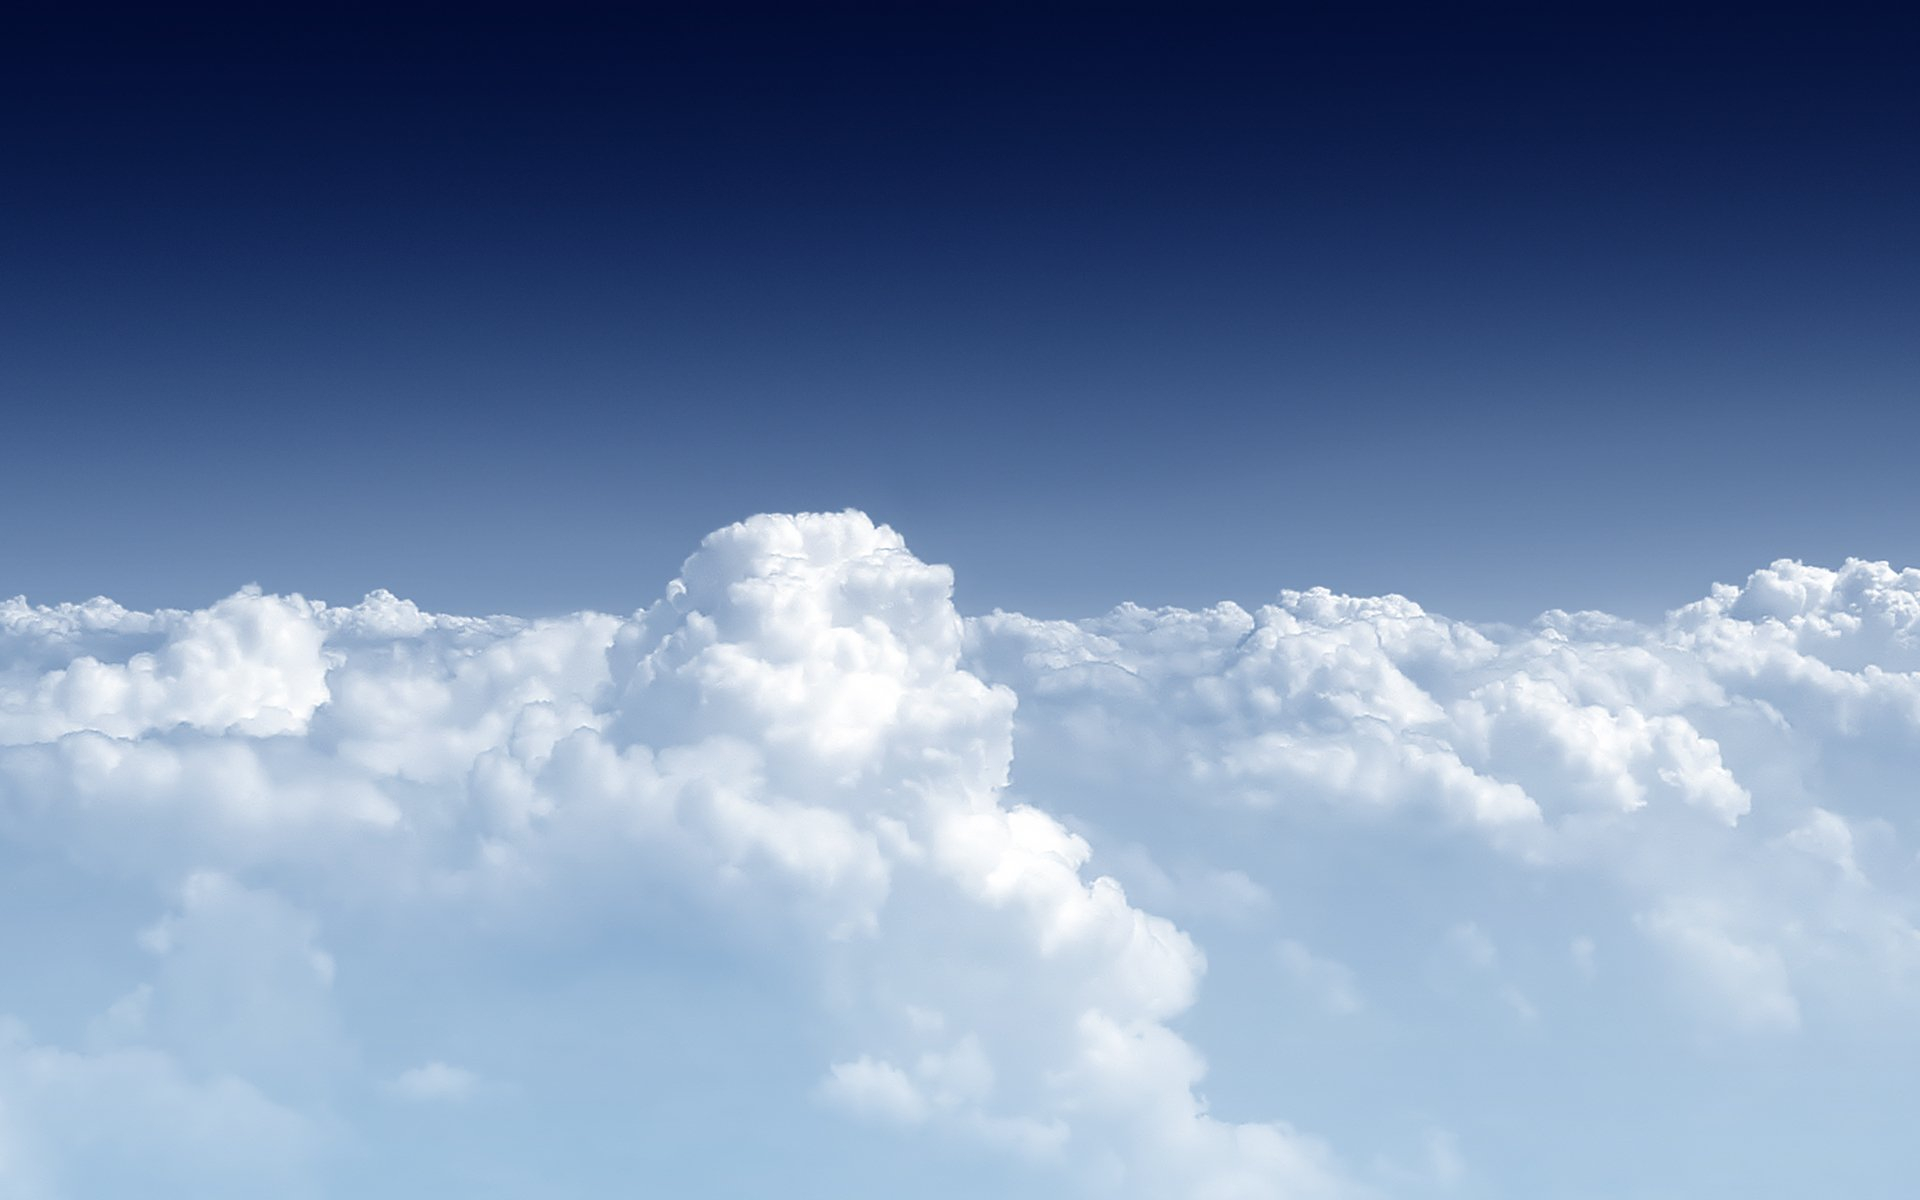 Летим над красивыми перистыми облаками · бесплатная фотография